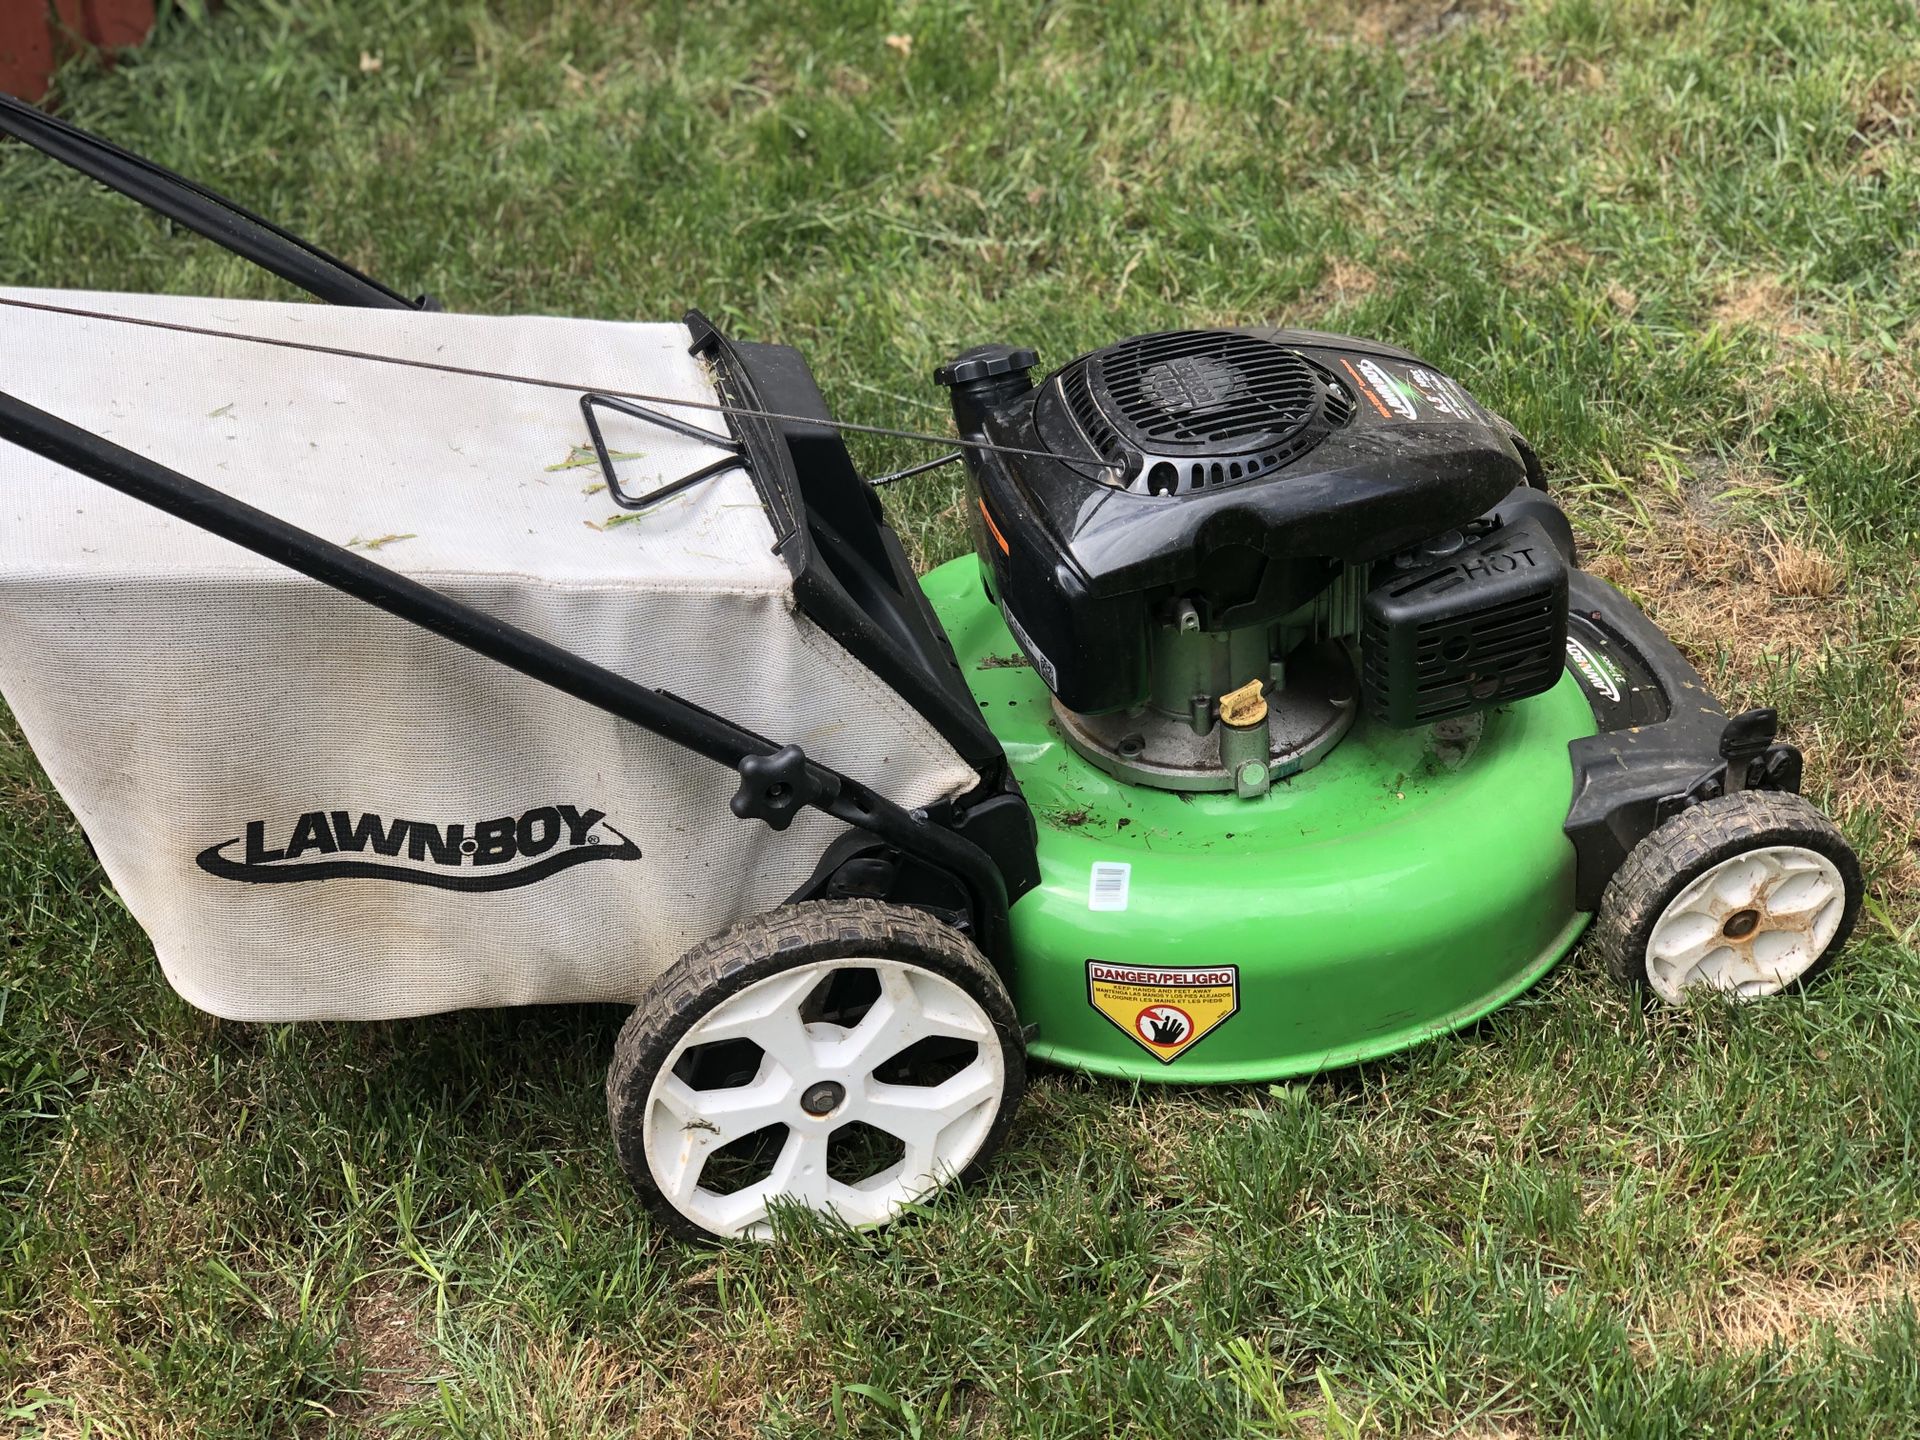 Lawn boy 149cc lawn mower